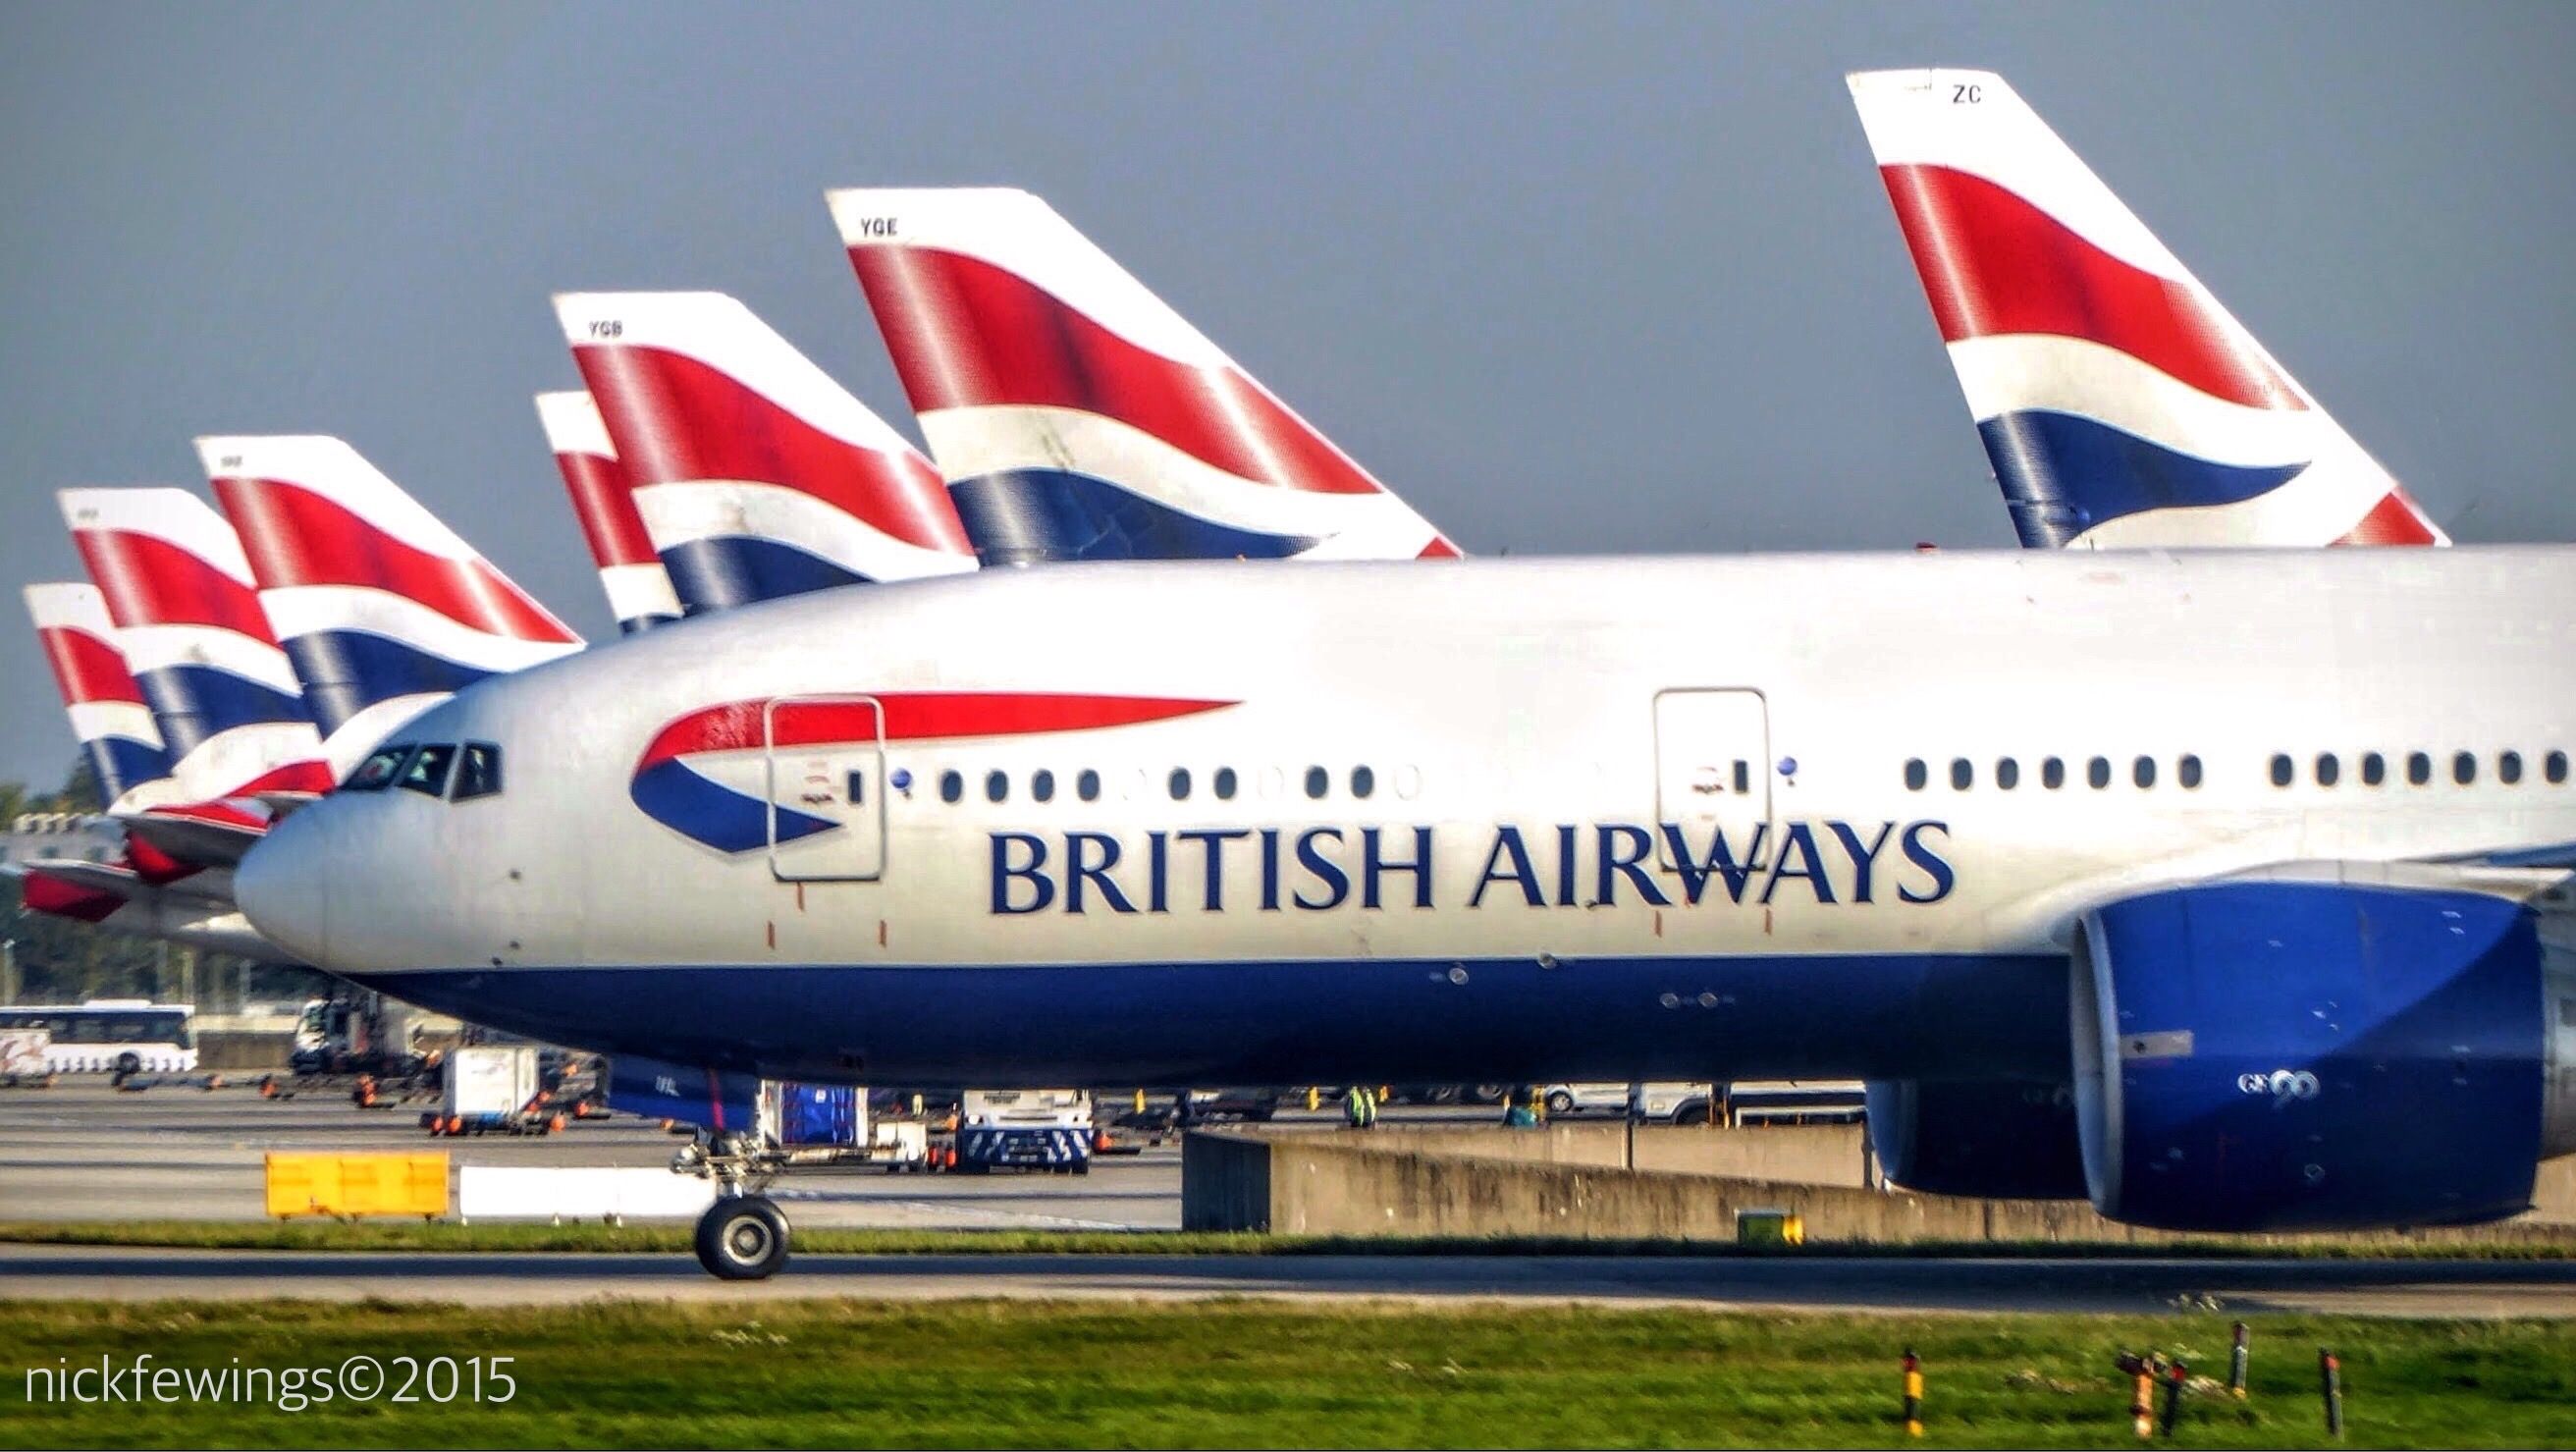 British Airways aircraft line up at LHR